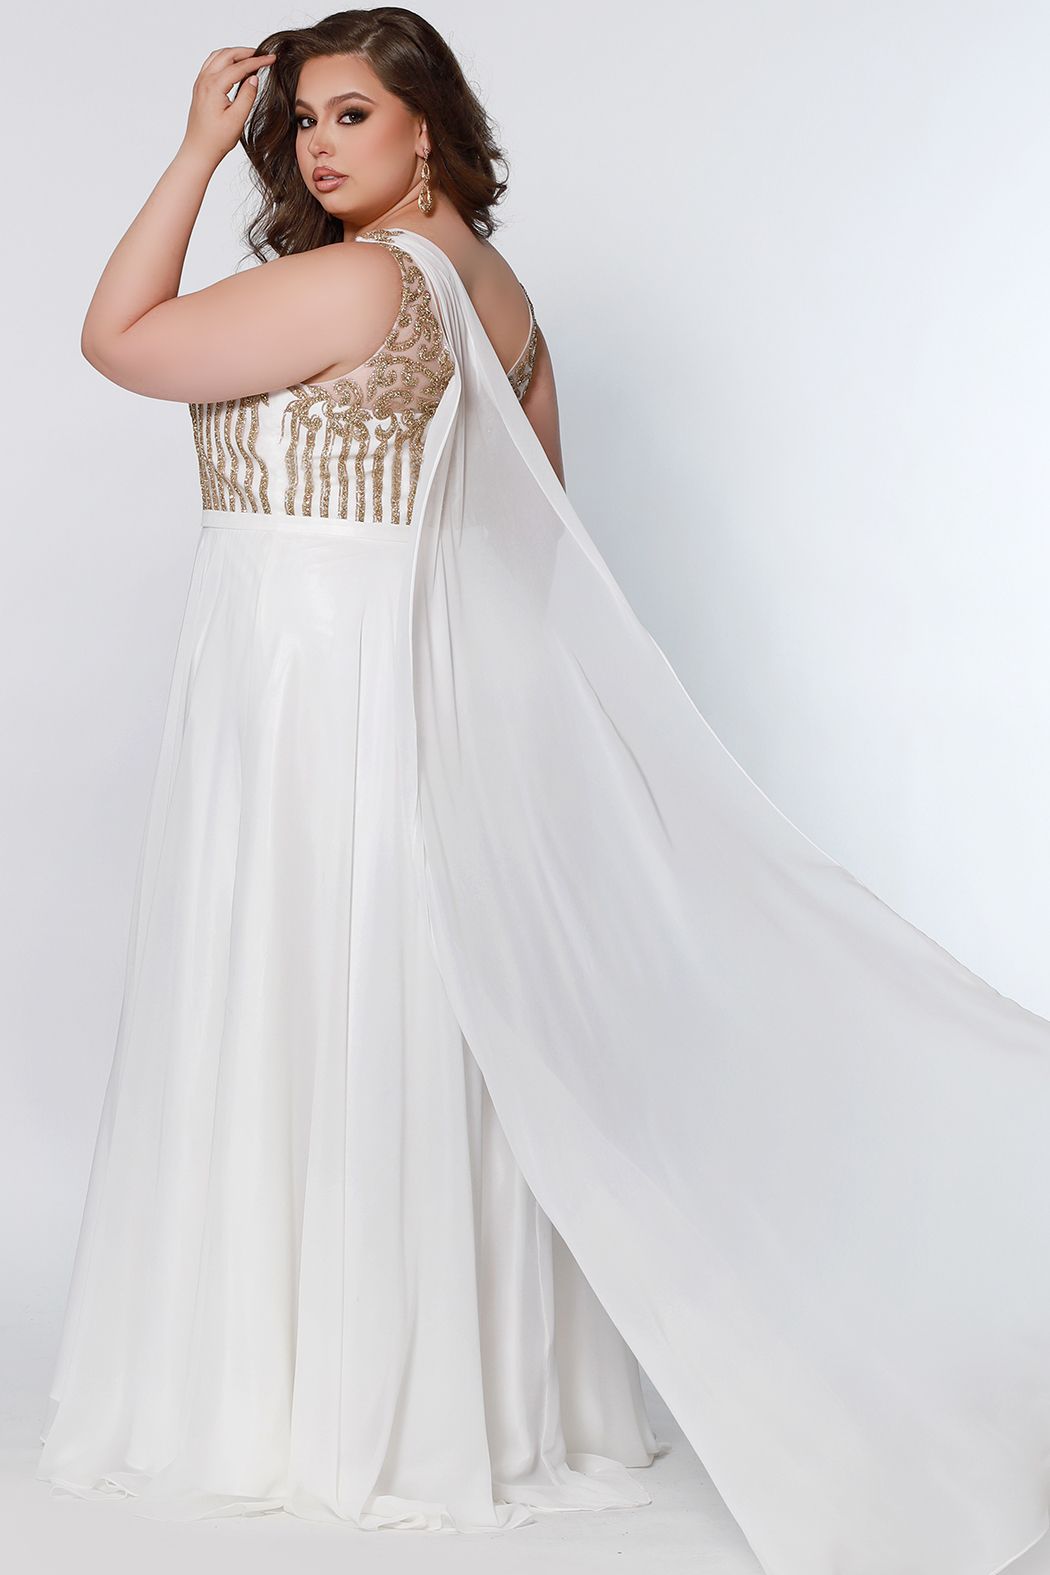 Sydney's Closet SC7331 Size 16 Ivory Gold Long Pageant Gown Cape Plus Size Prom Dress